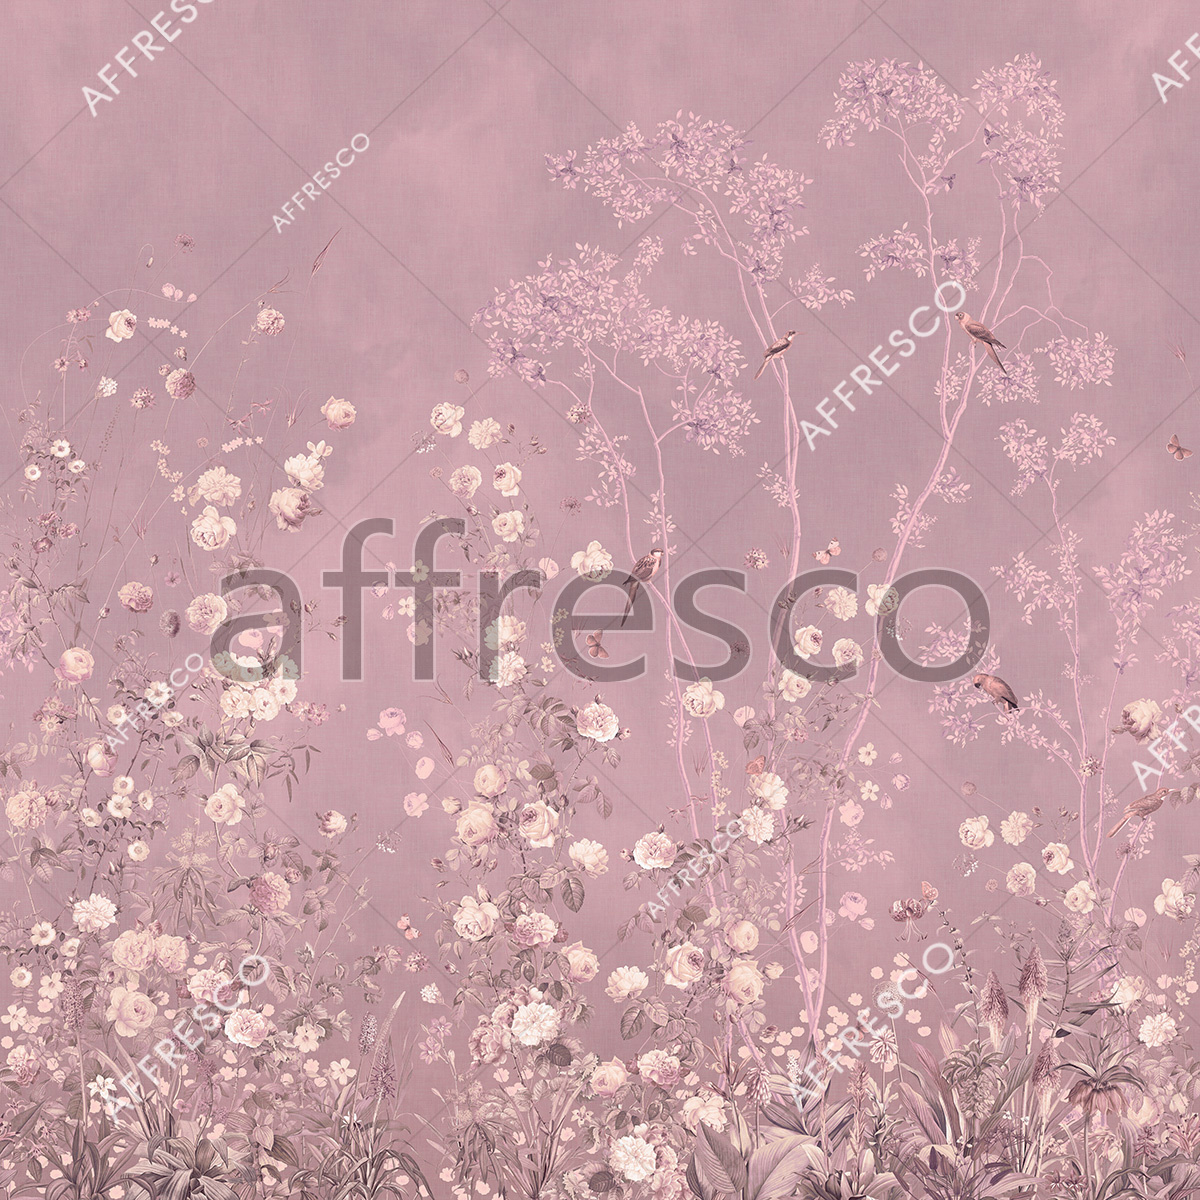 AF955-COL3 | Wallpaper part 2 | Affresco Factory